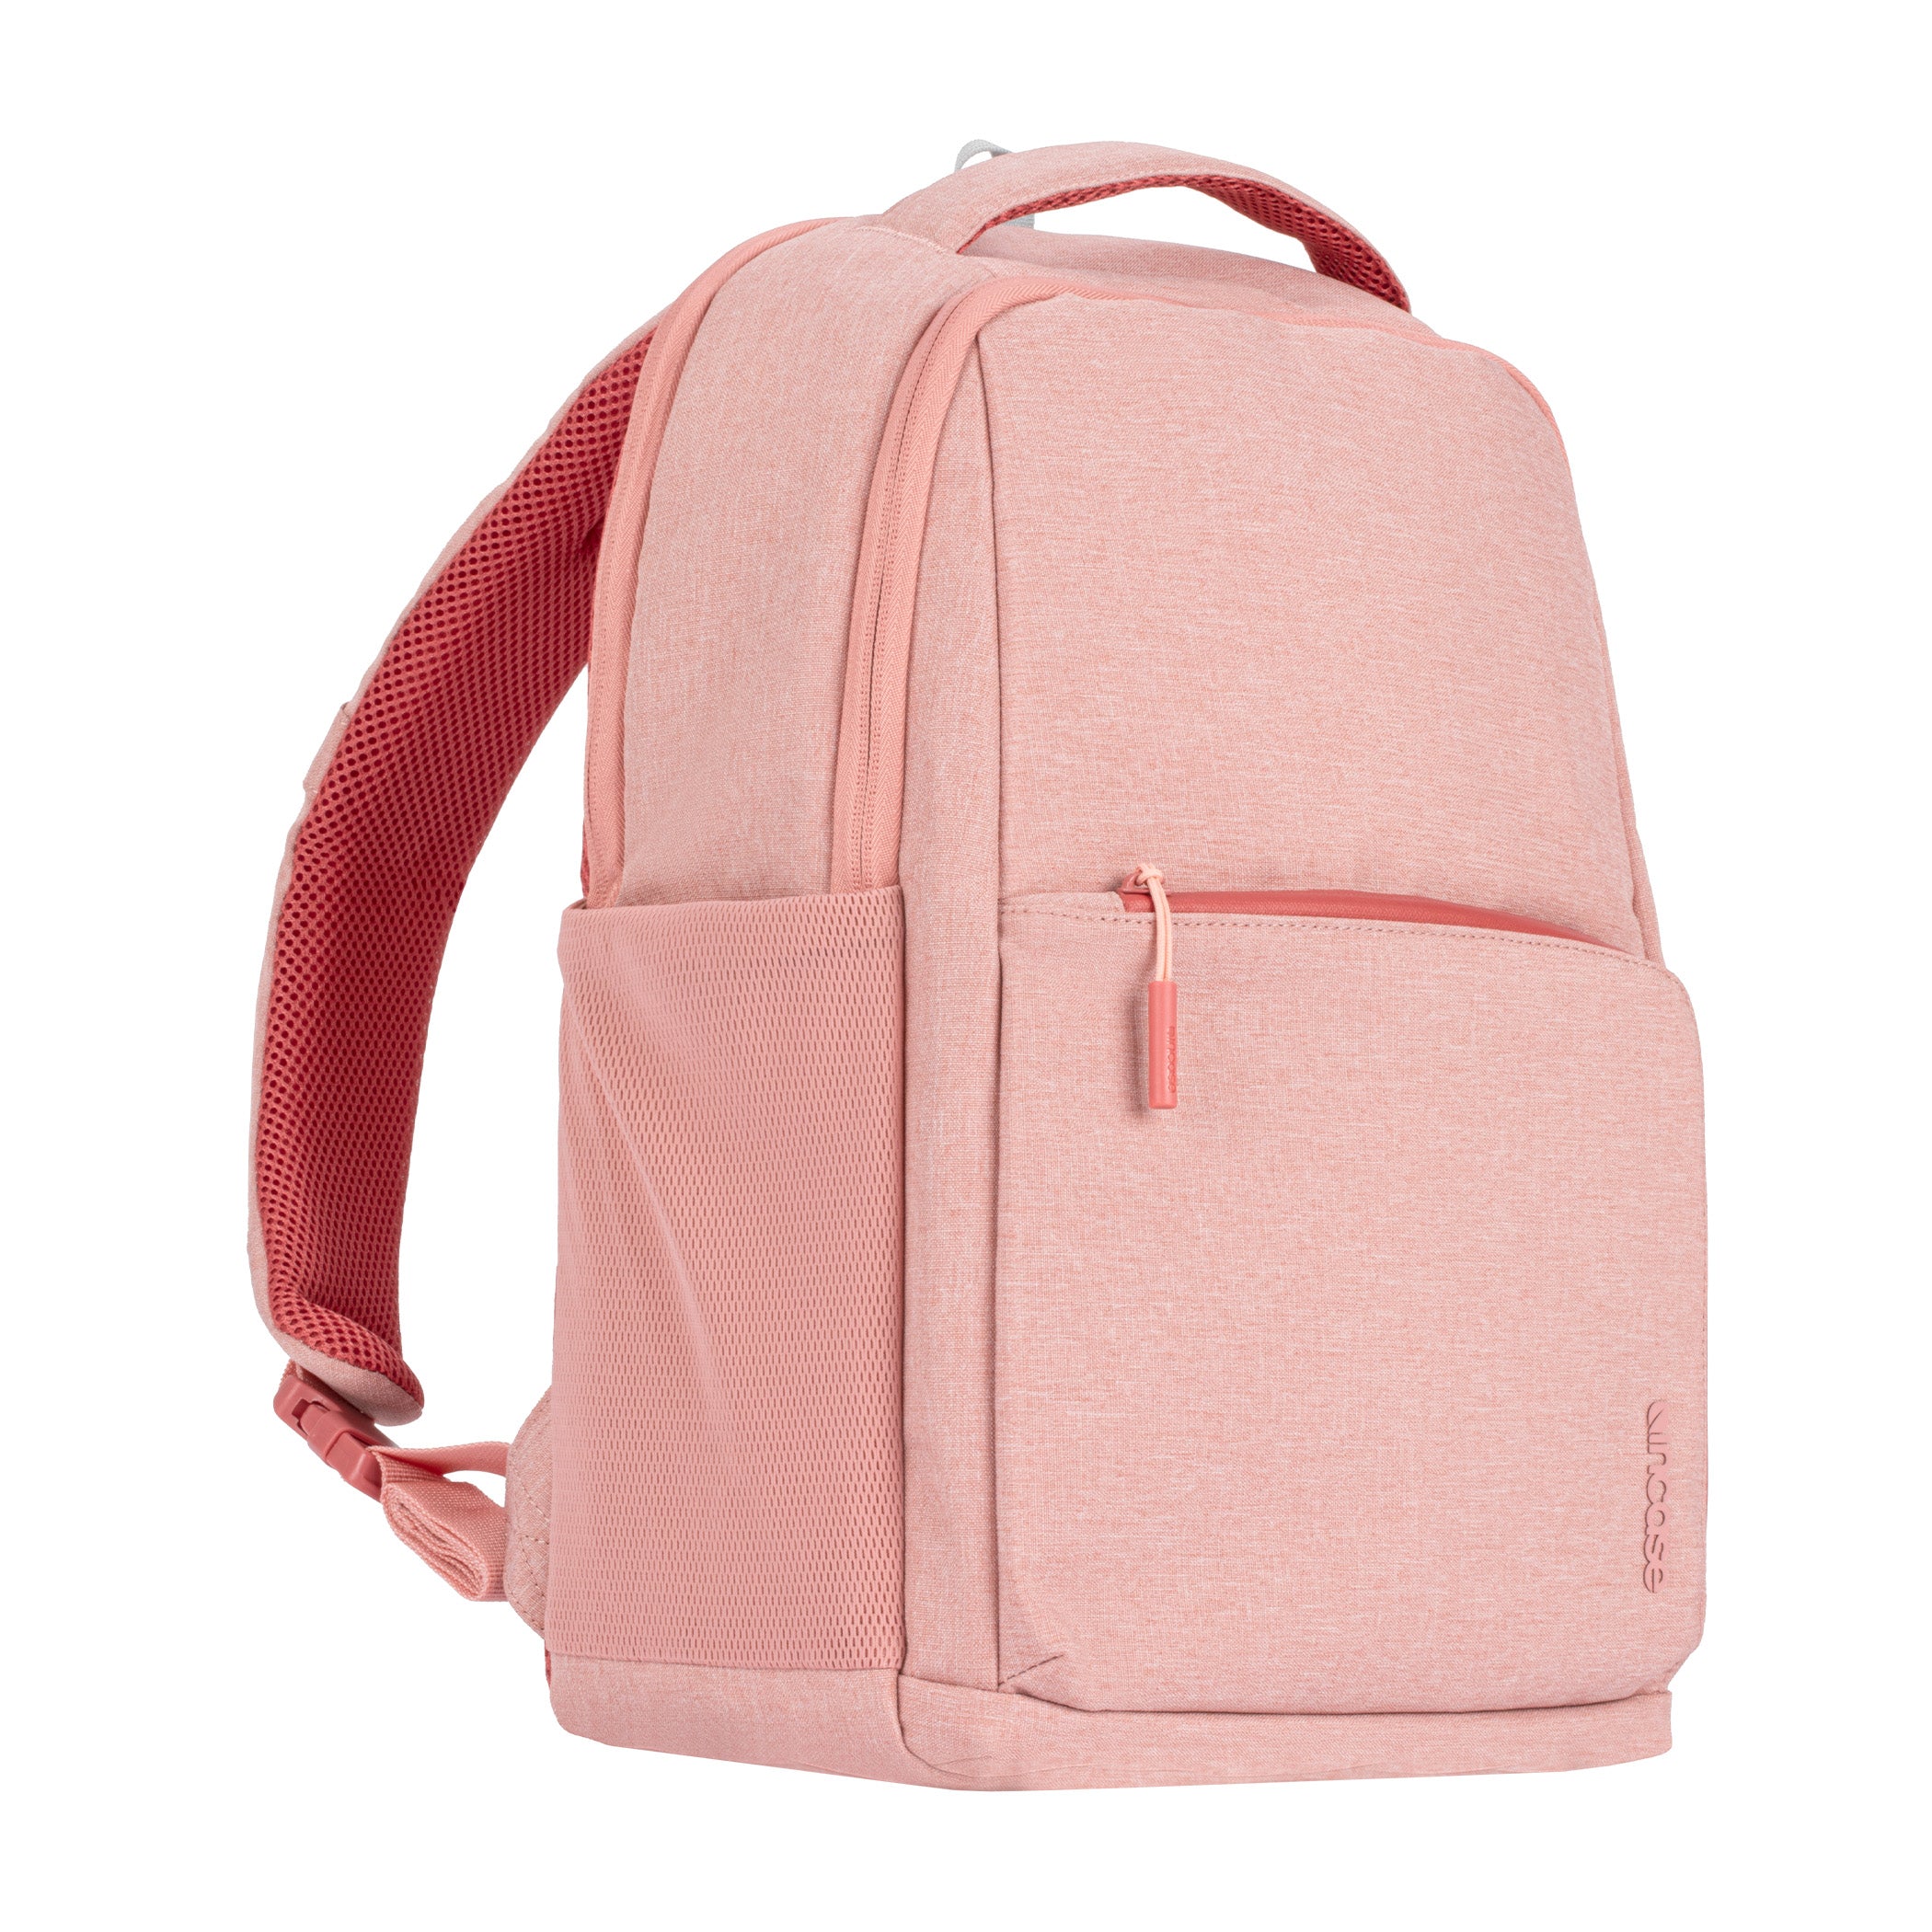 ファセット 20l バックパック(Facet 20L Backpack) - Pink(ピンク